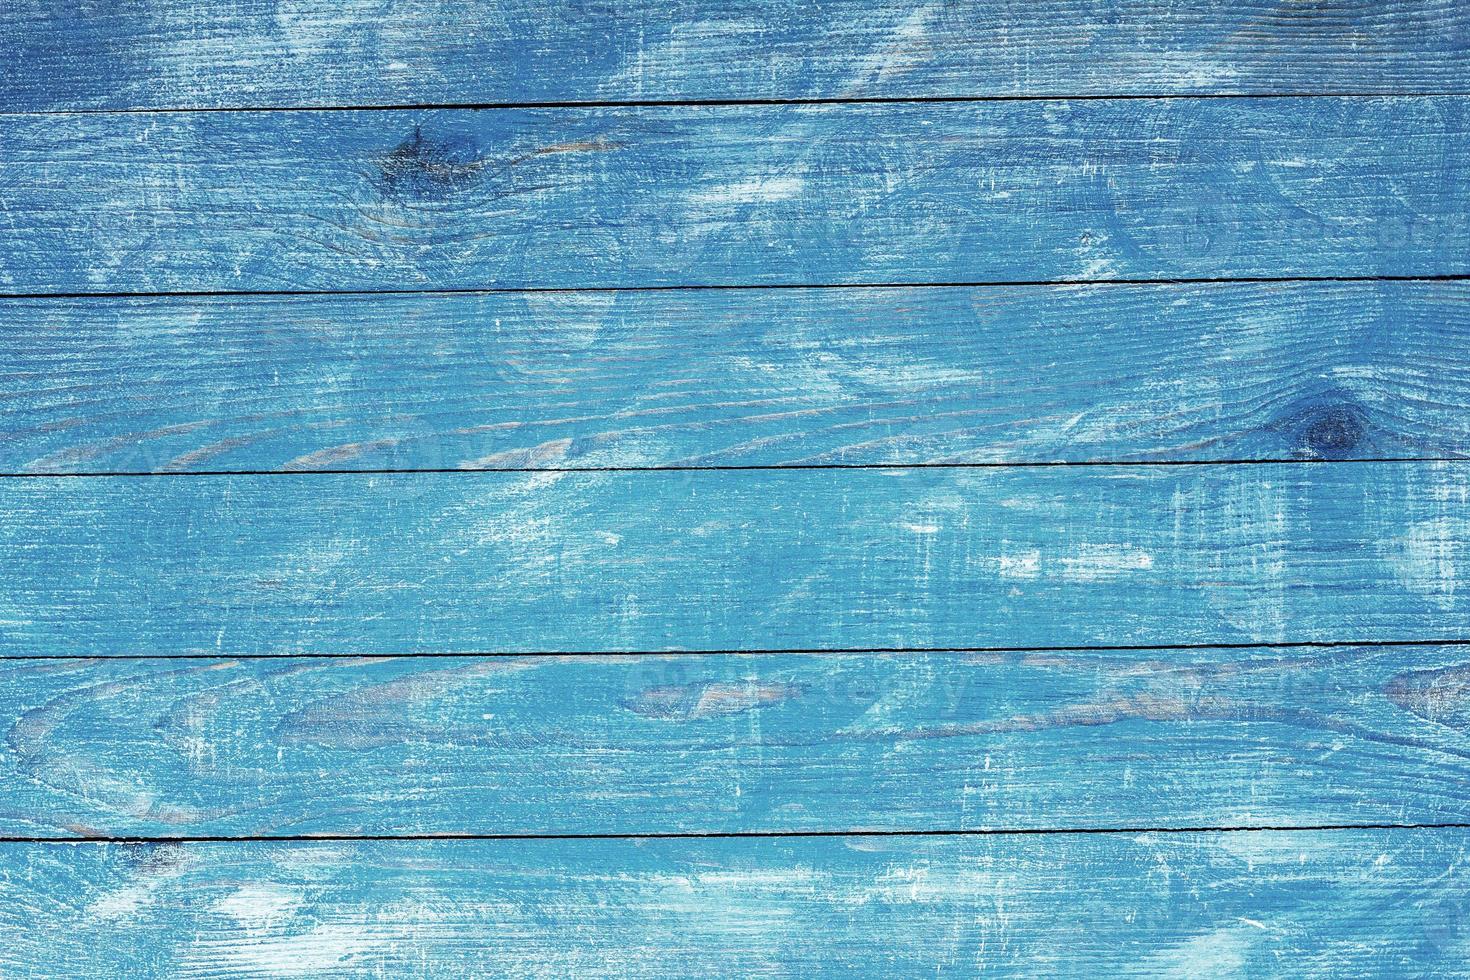 texture di sfondo in legno blu vintage con nodi e fori per unghie. vecchio muro di legno dipinto. sfondo astratto blu. tavole orizzontali blu scuro in legno vintage. foto